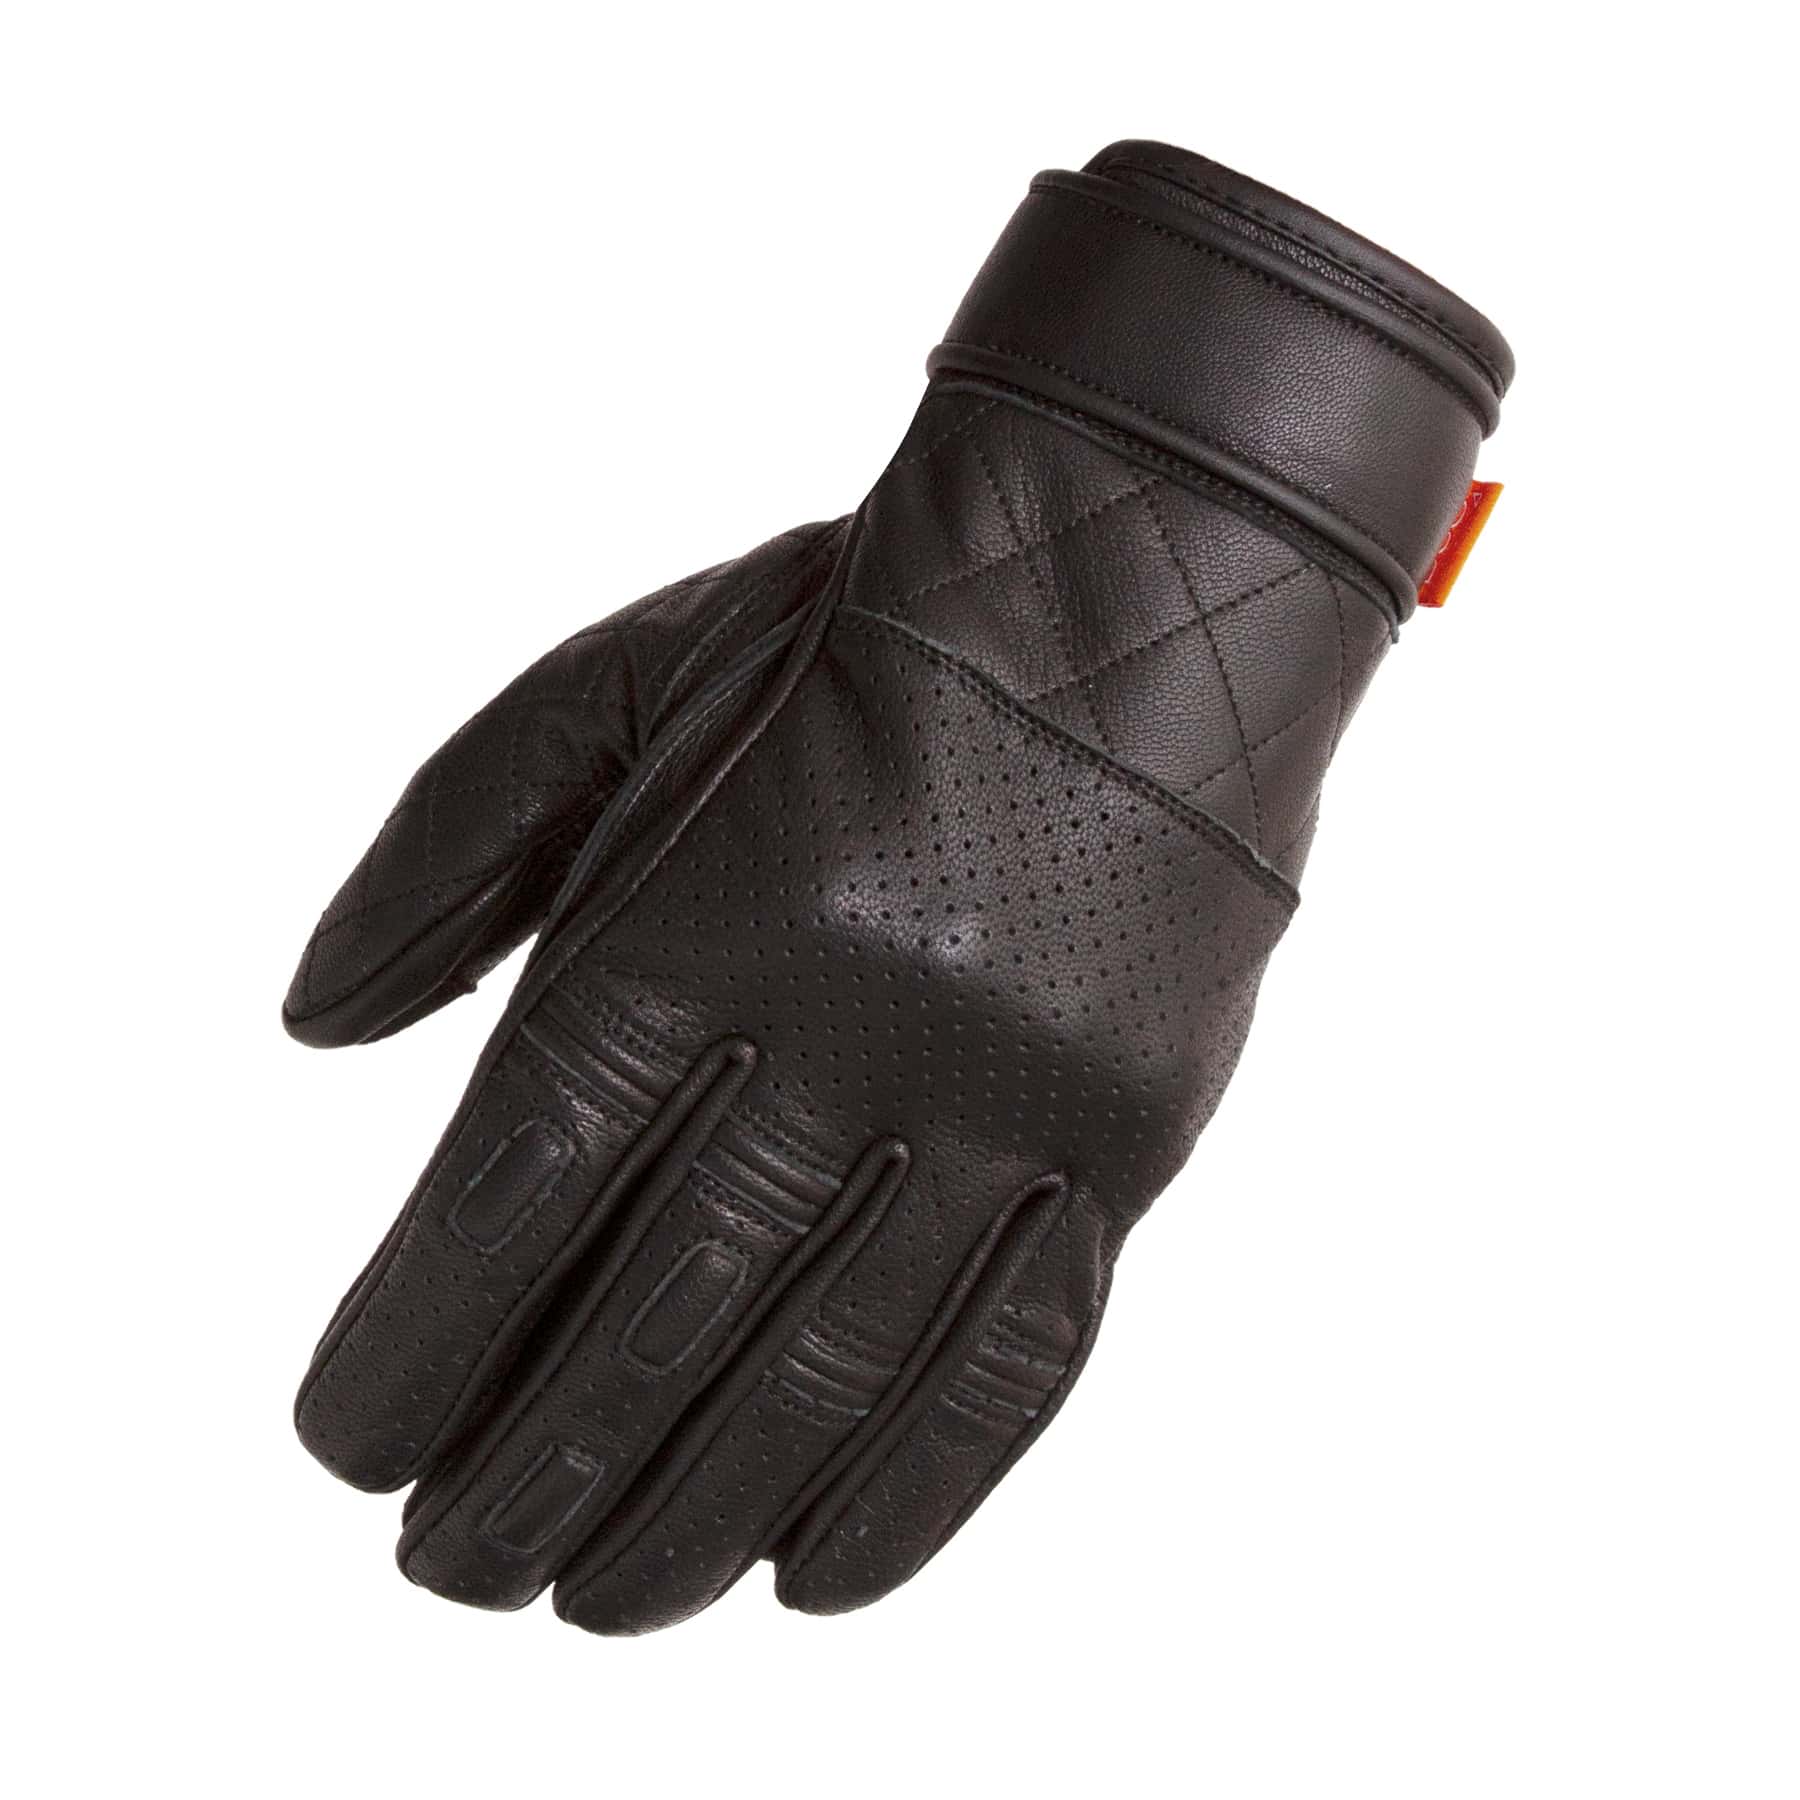 Merlin Clanstone glove black